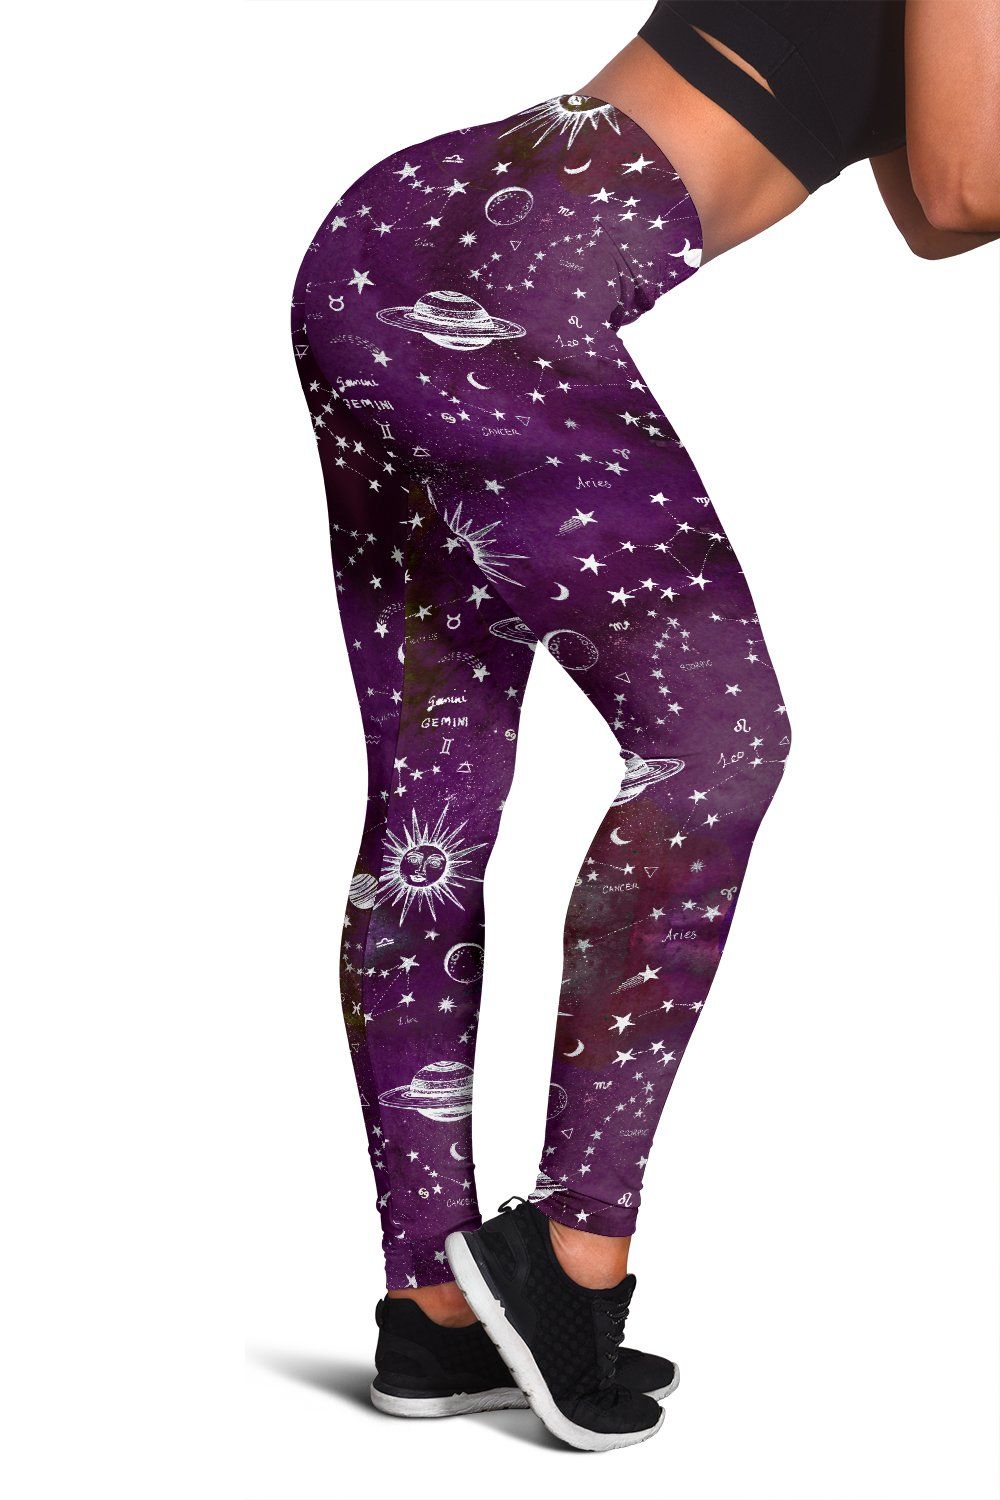 Astrology map purple leggings - Spirit Nest